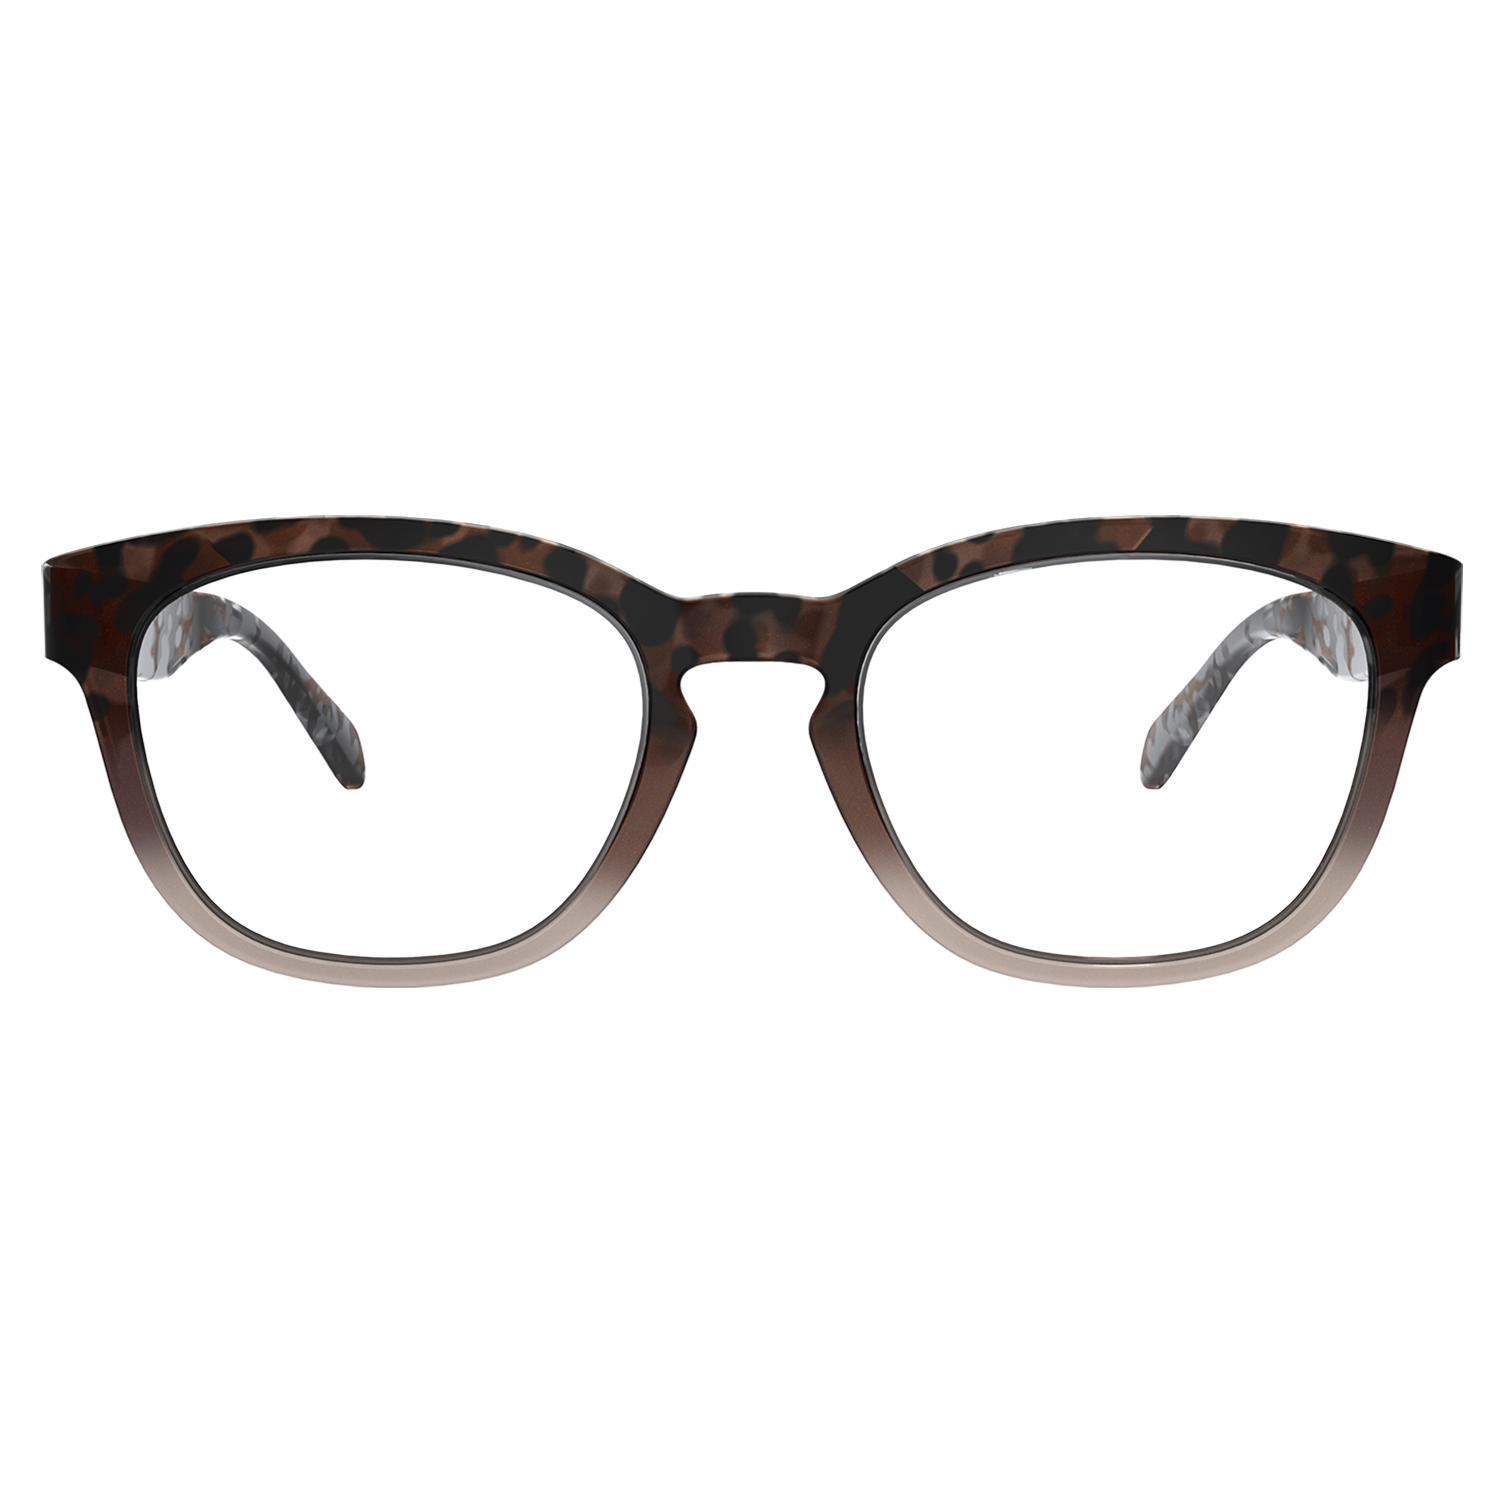 Paunch RX Polarized Sunglasses in Demo Lens | Costa Del Mar®